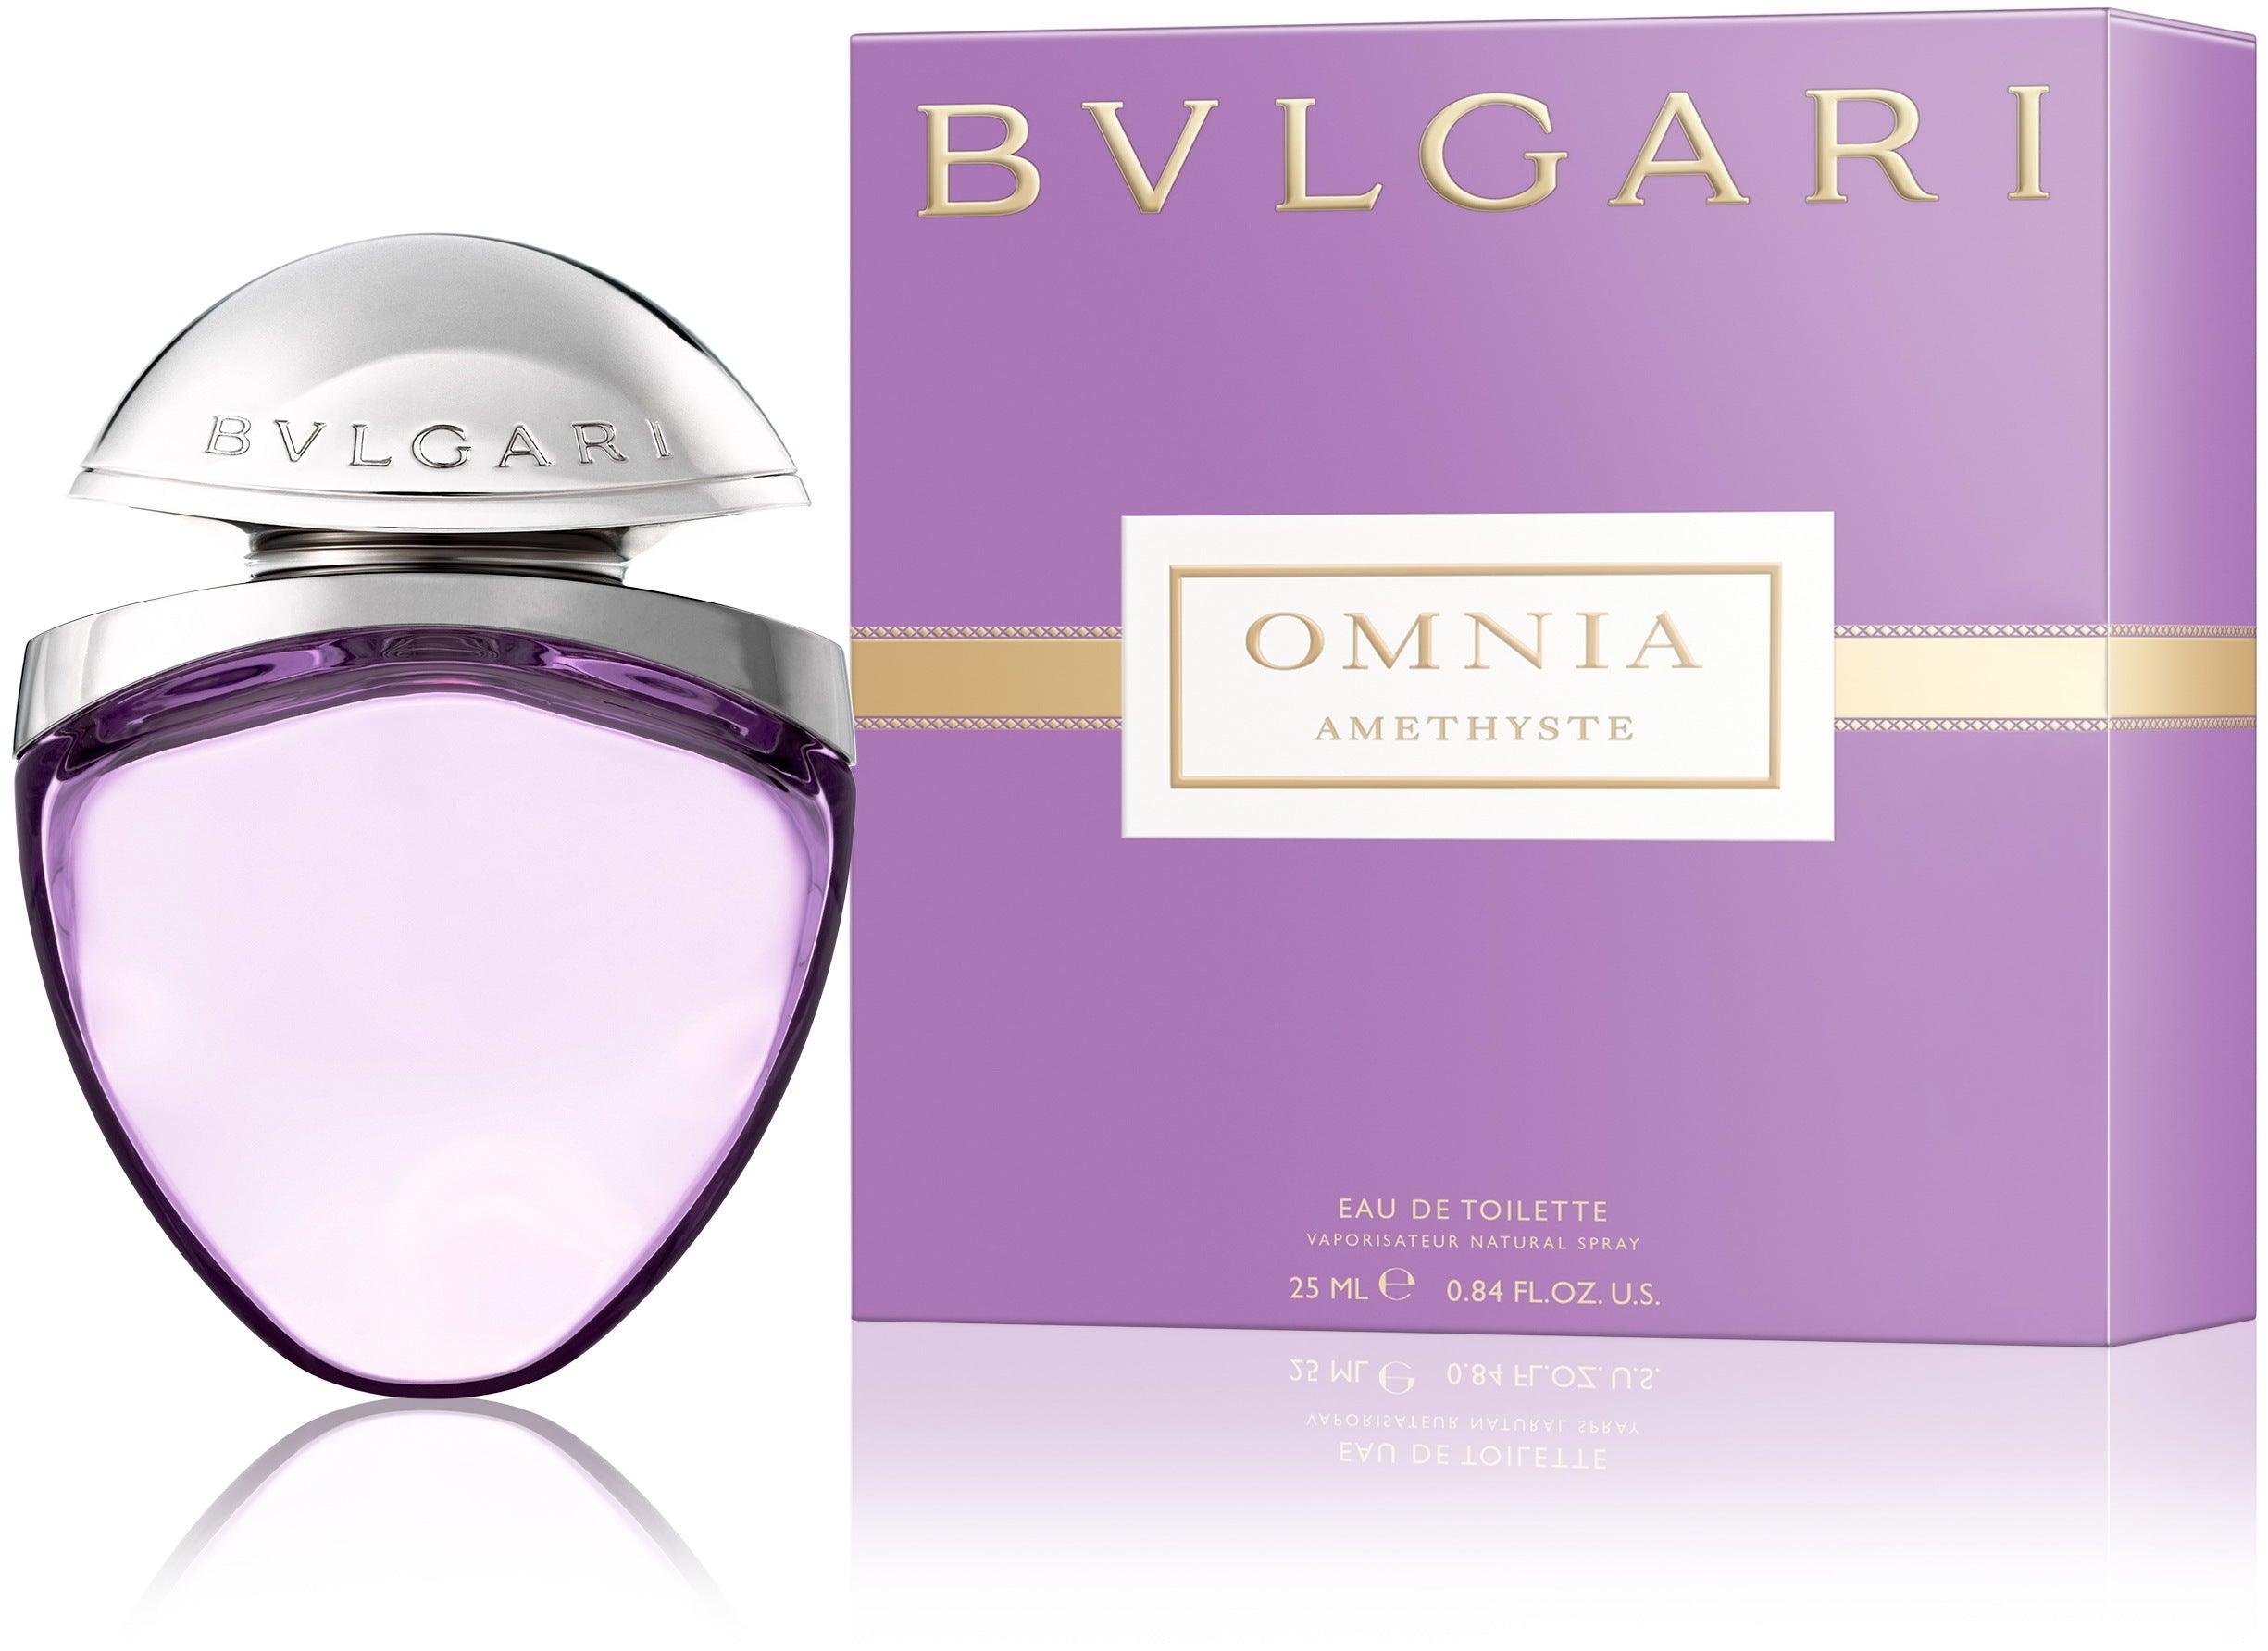 Bvlgari Omnia Amethyste - Parfum Gallerie